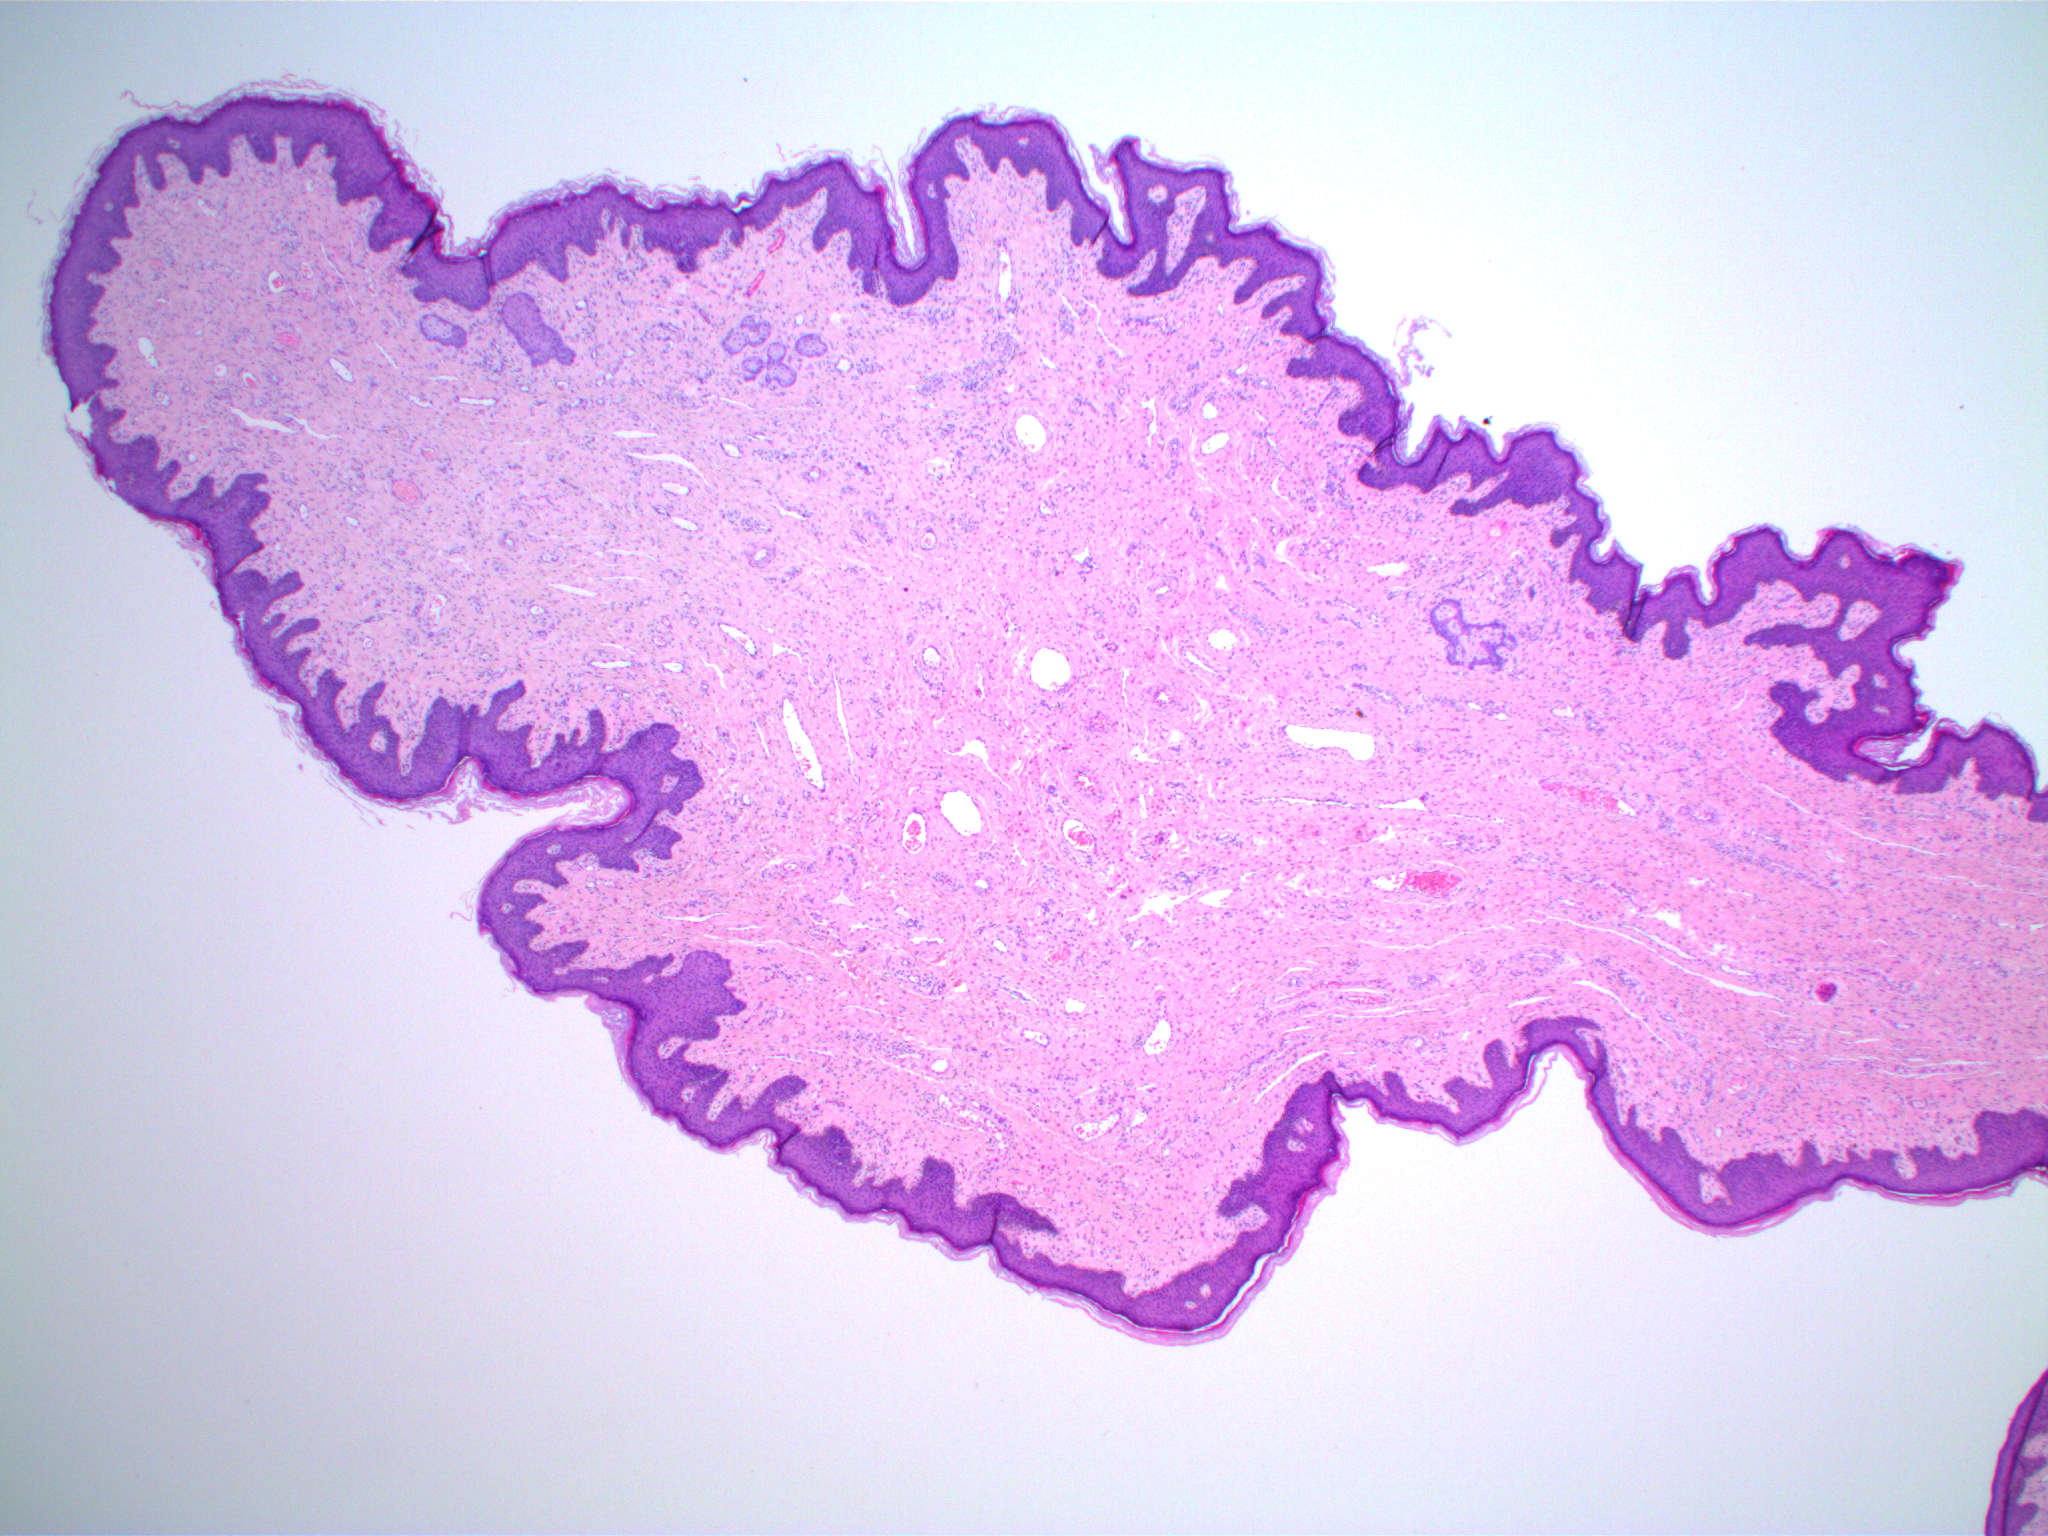 fibroepithelial papillomas